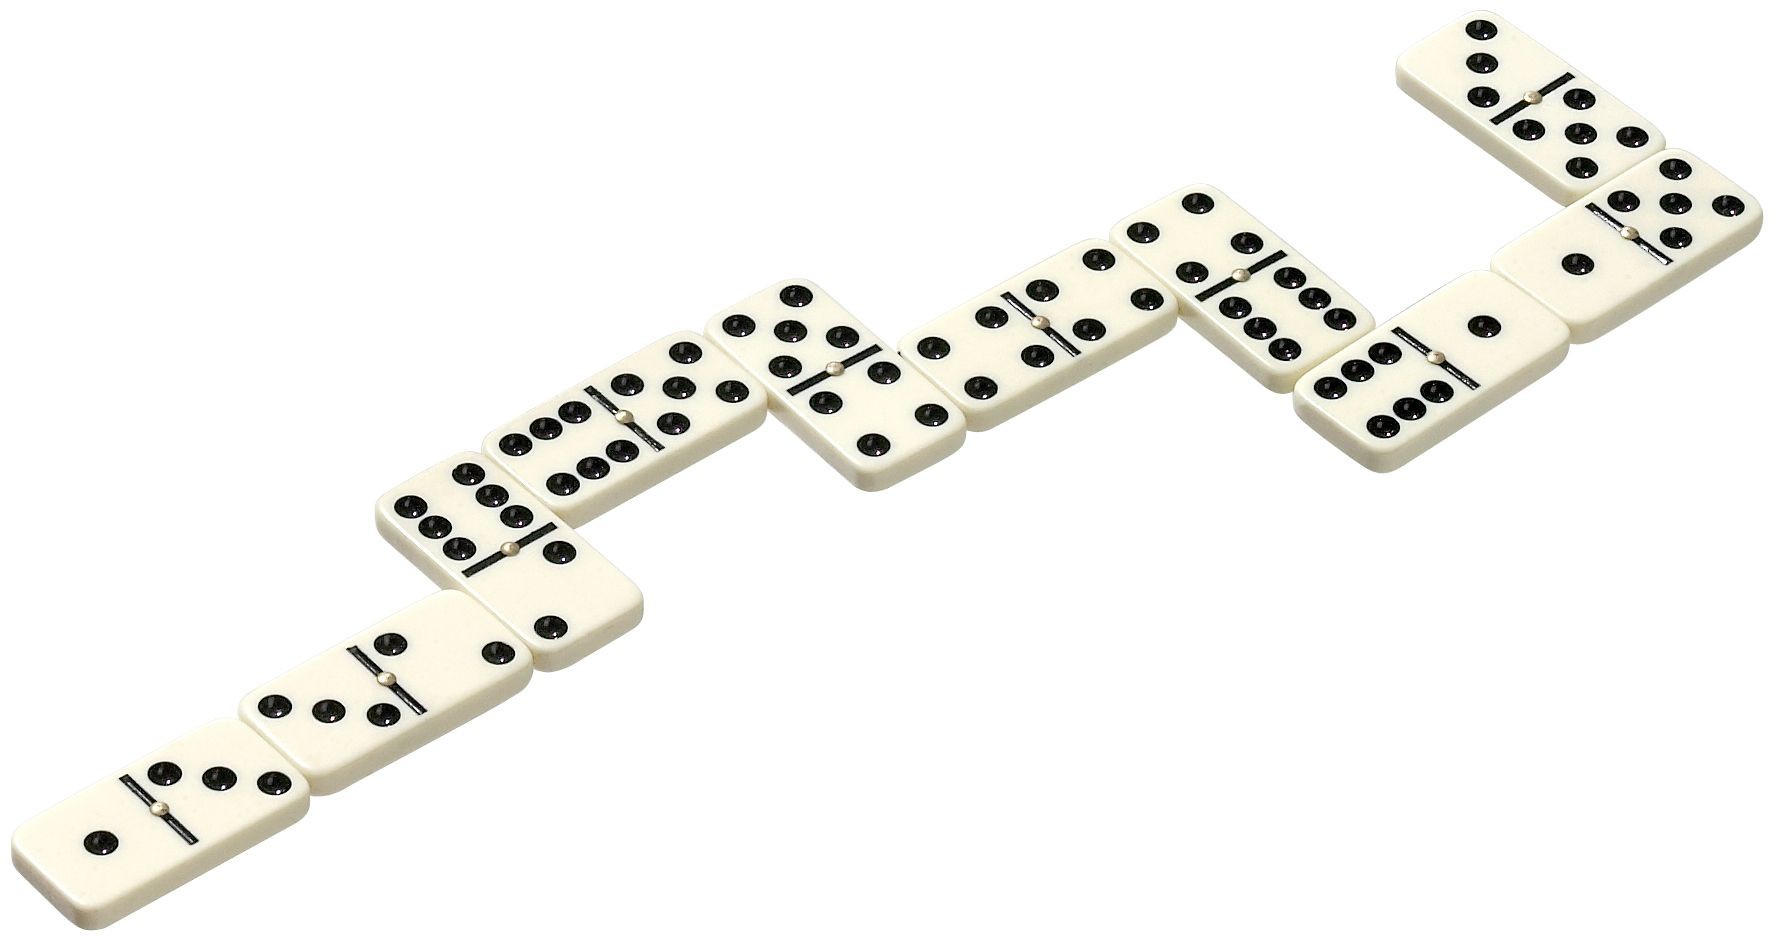 Domino double 6